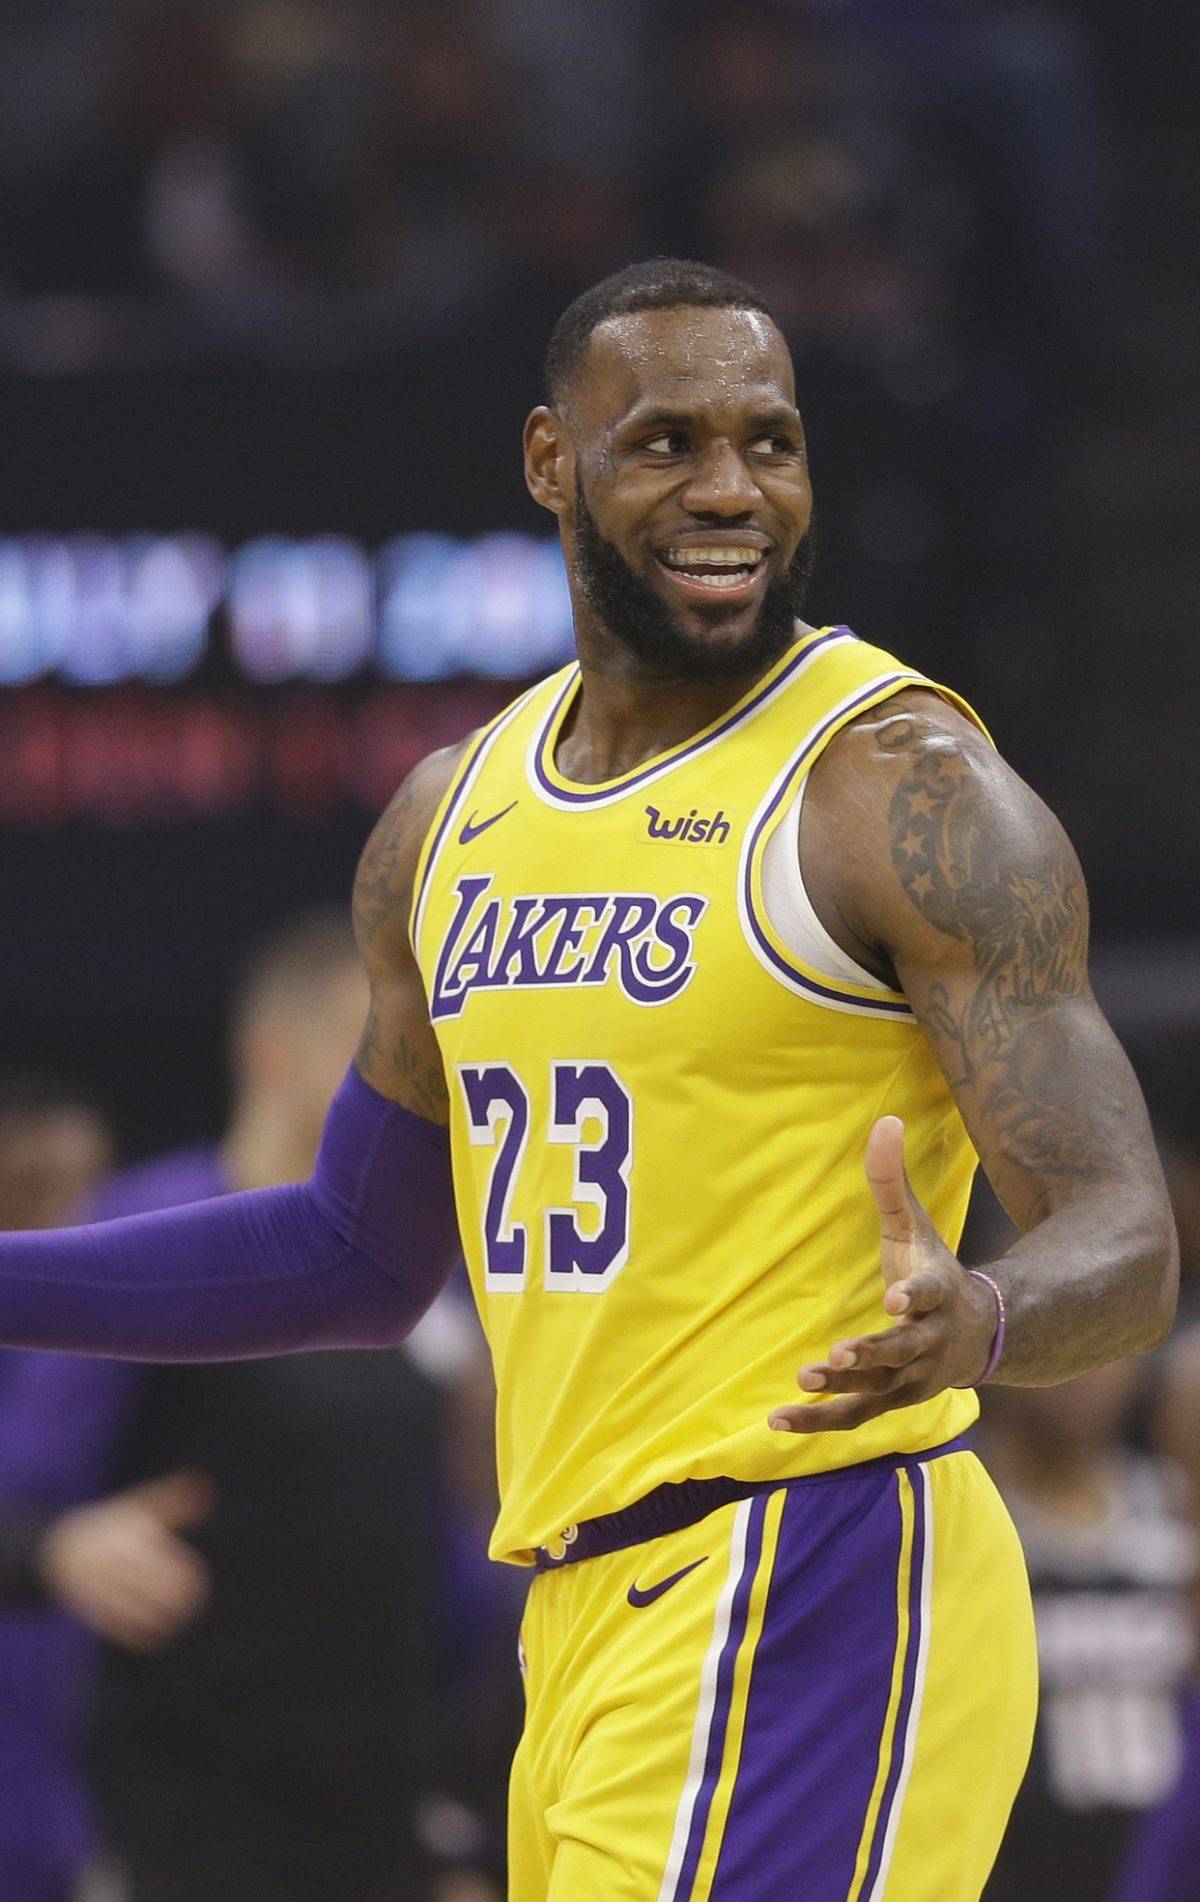 Adquisición de Westbrook fortalece Lakers